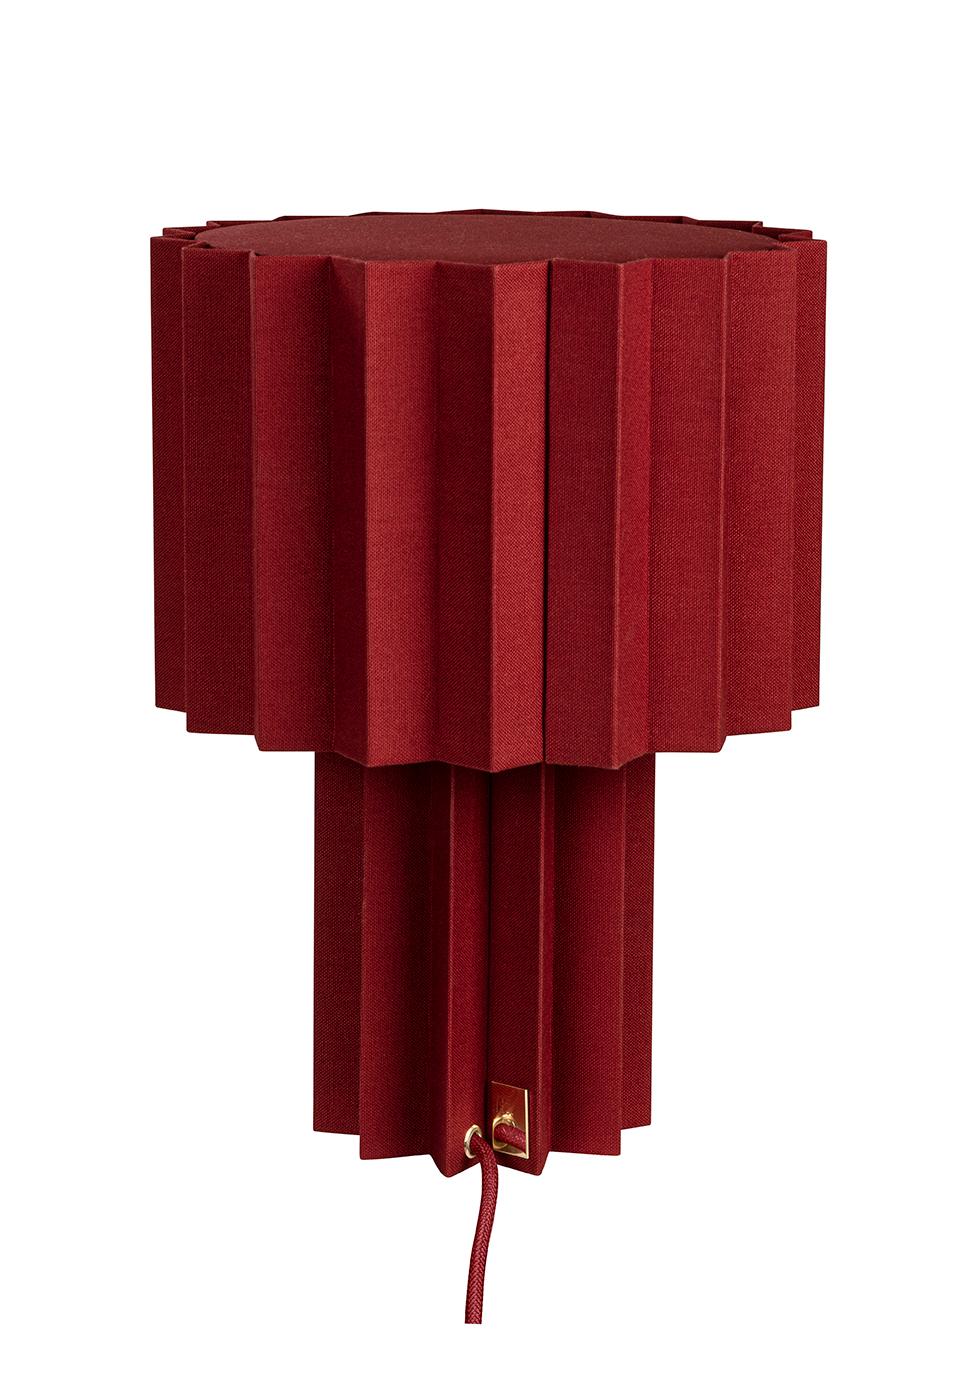 'Plissé Burgundy Edition' Pleated Textile Table Lamp by Folkform for Örsjö For Sale 3